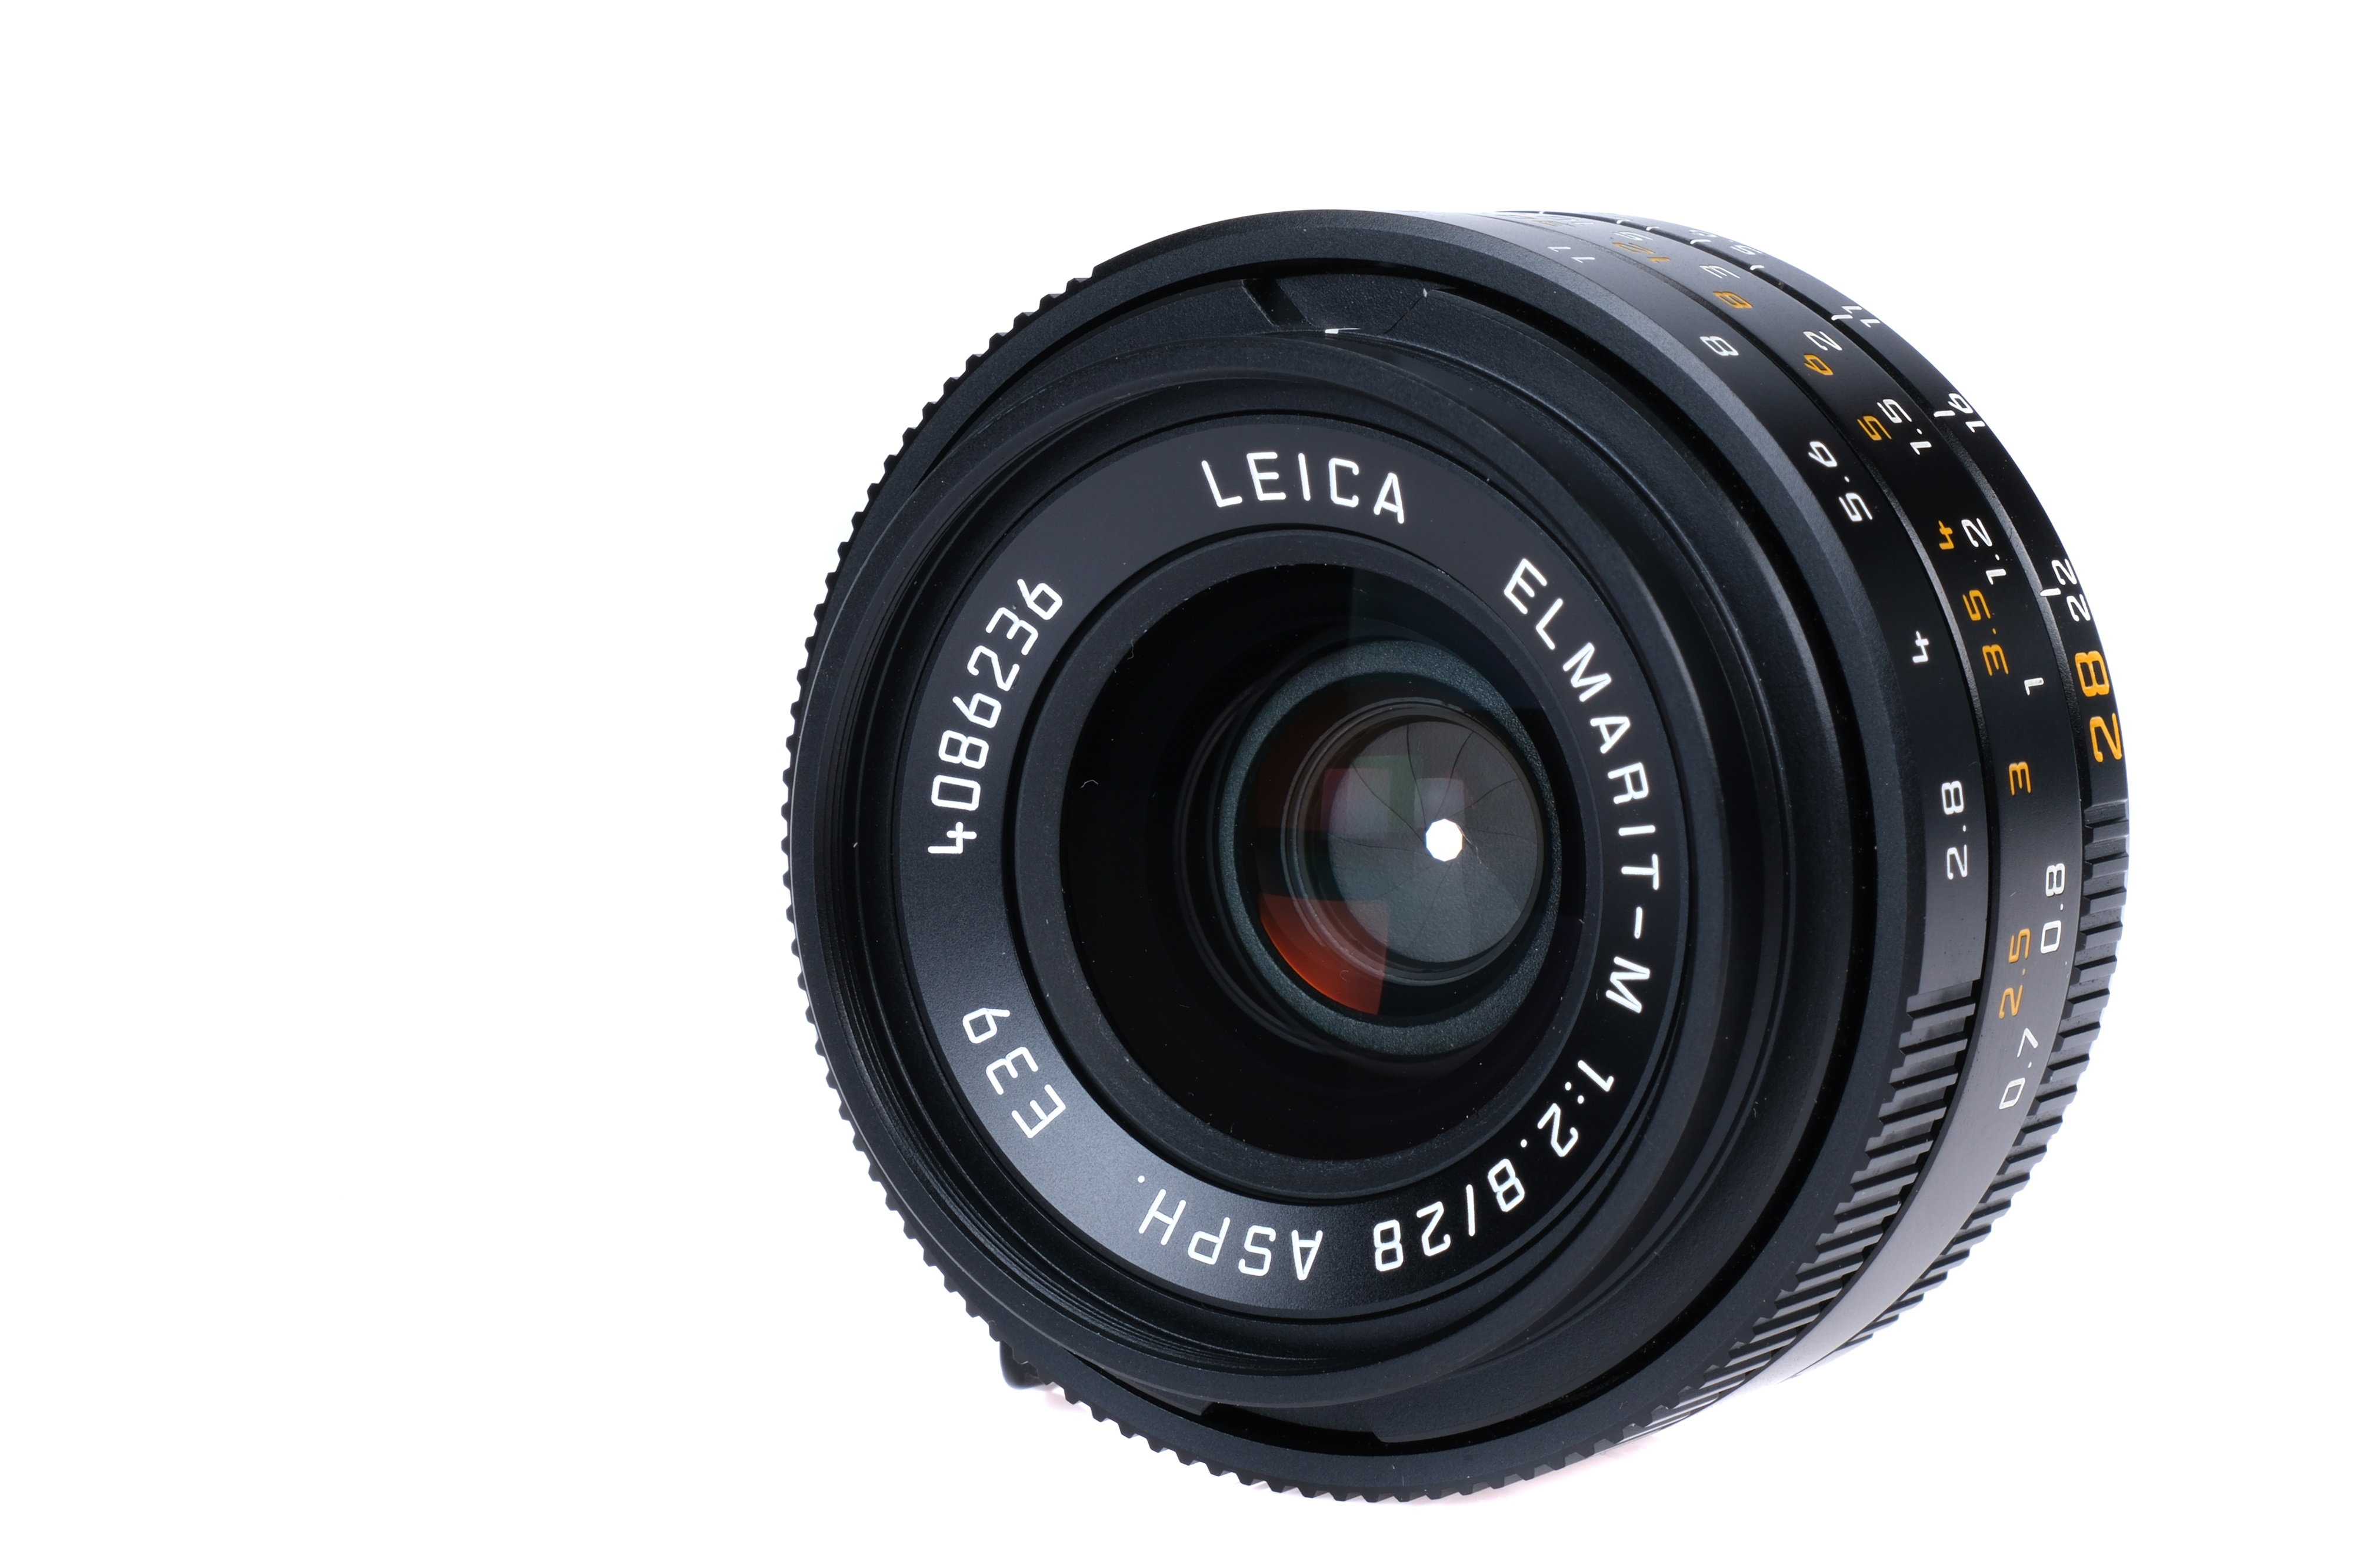 A Leitz Elmarit-M ASPH. f/2.8 28mm Lens, - Image 2 of 3